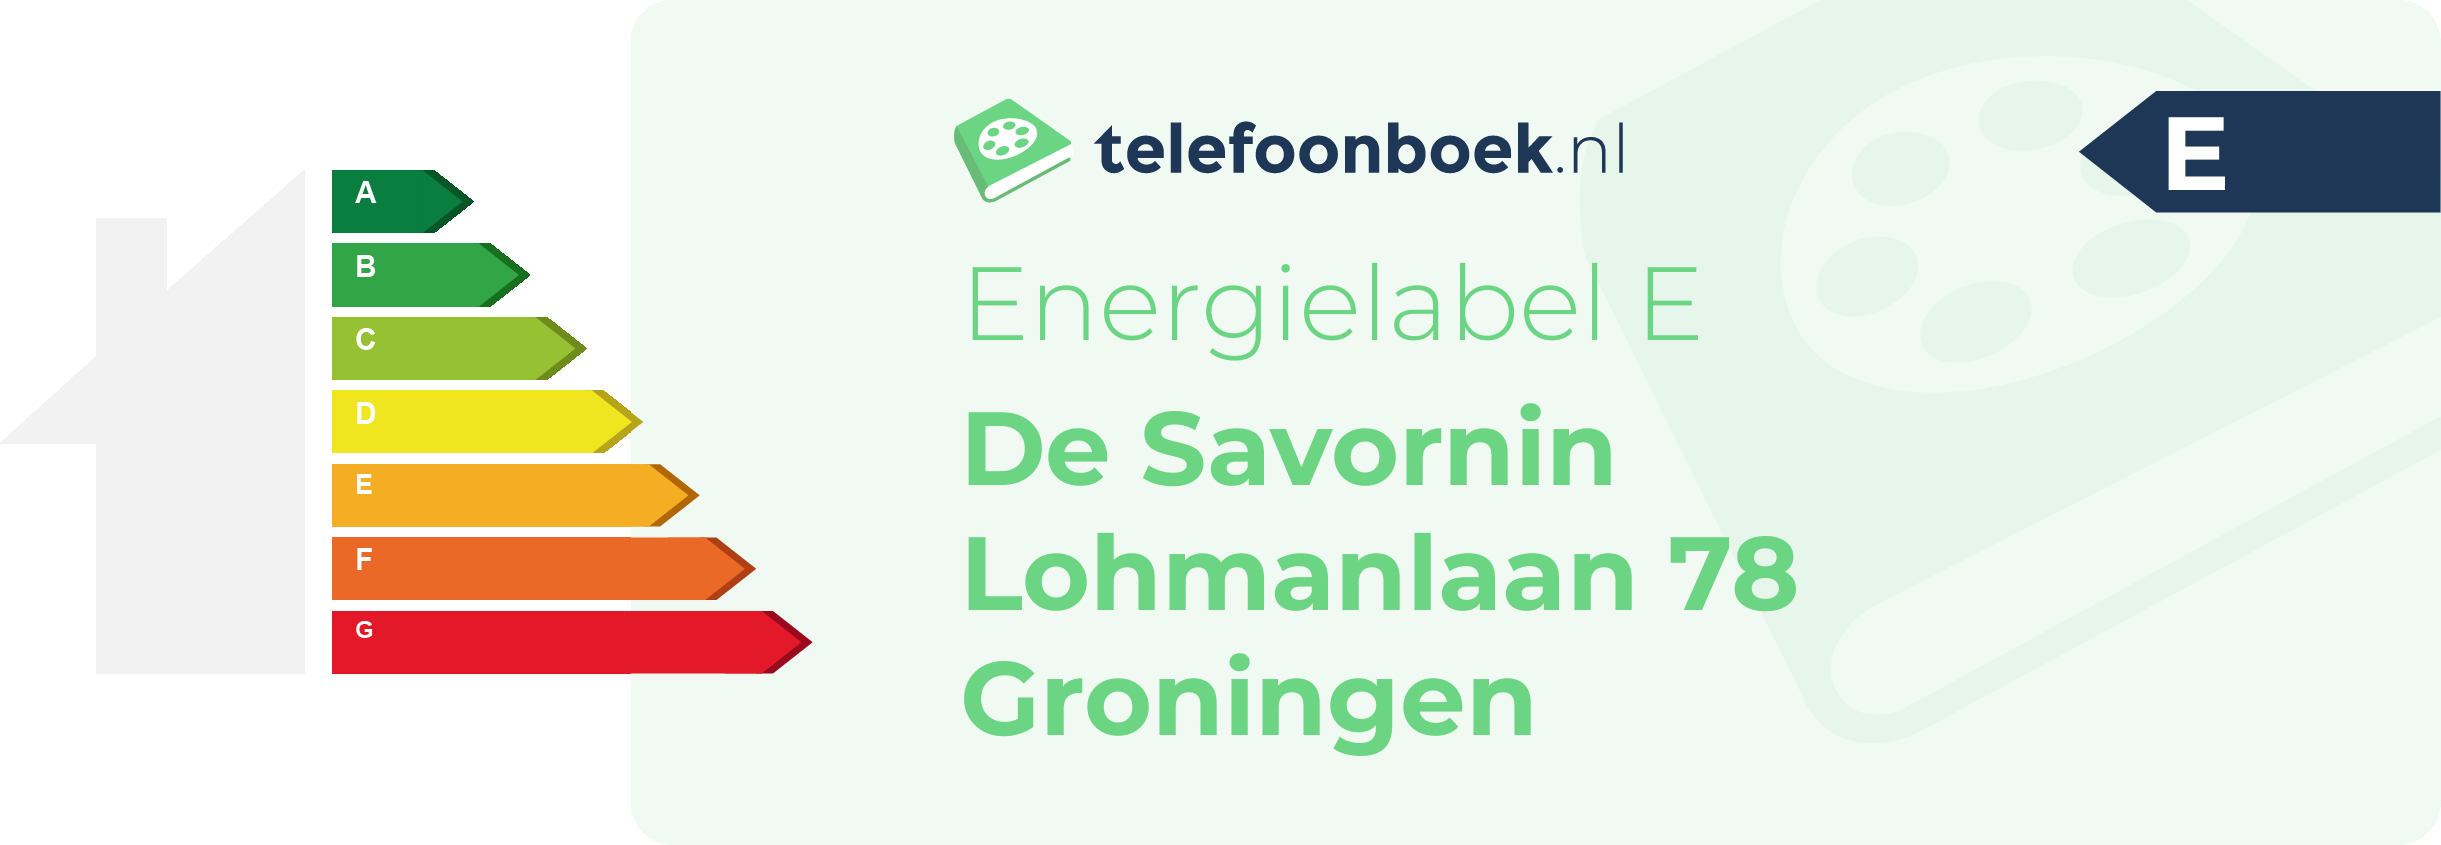 Energielabel De Savornin Lohmanlaan 78 Groningen